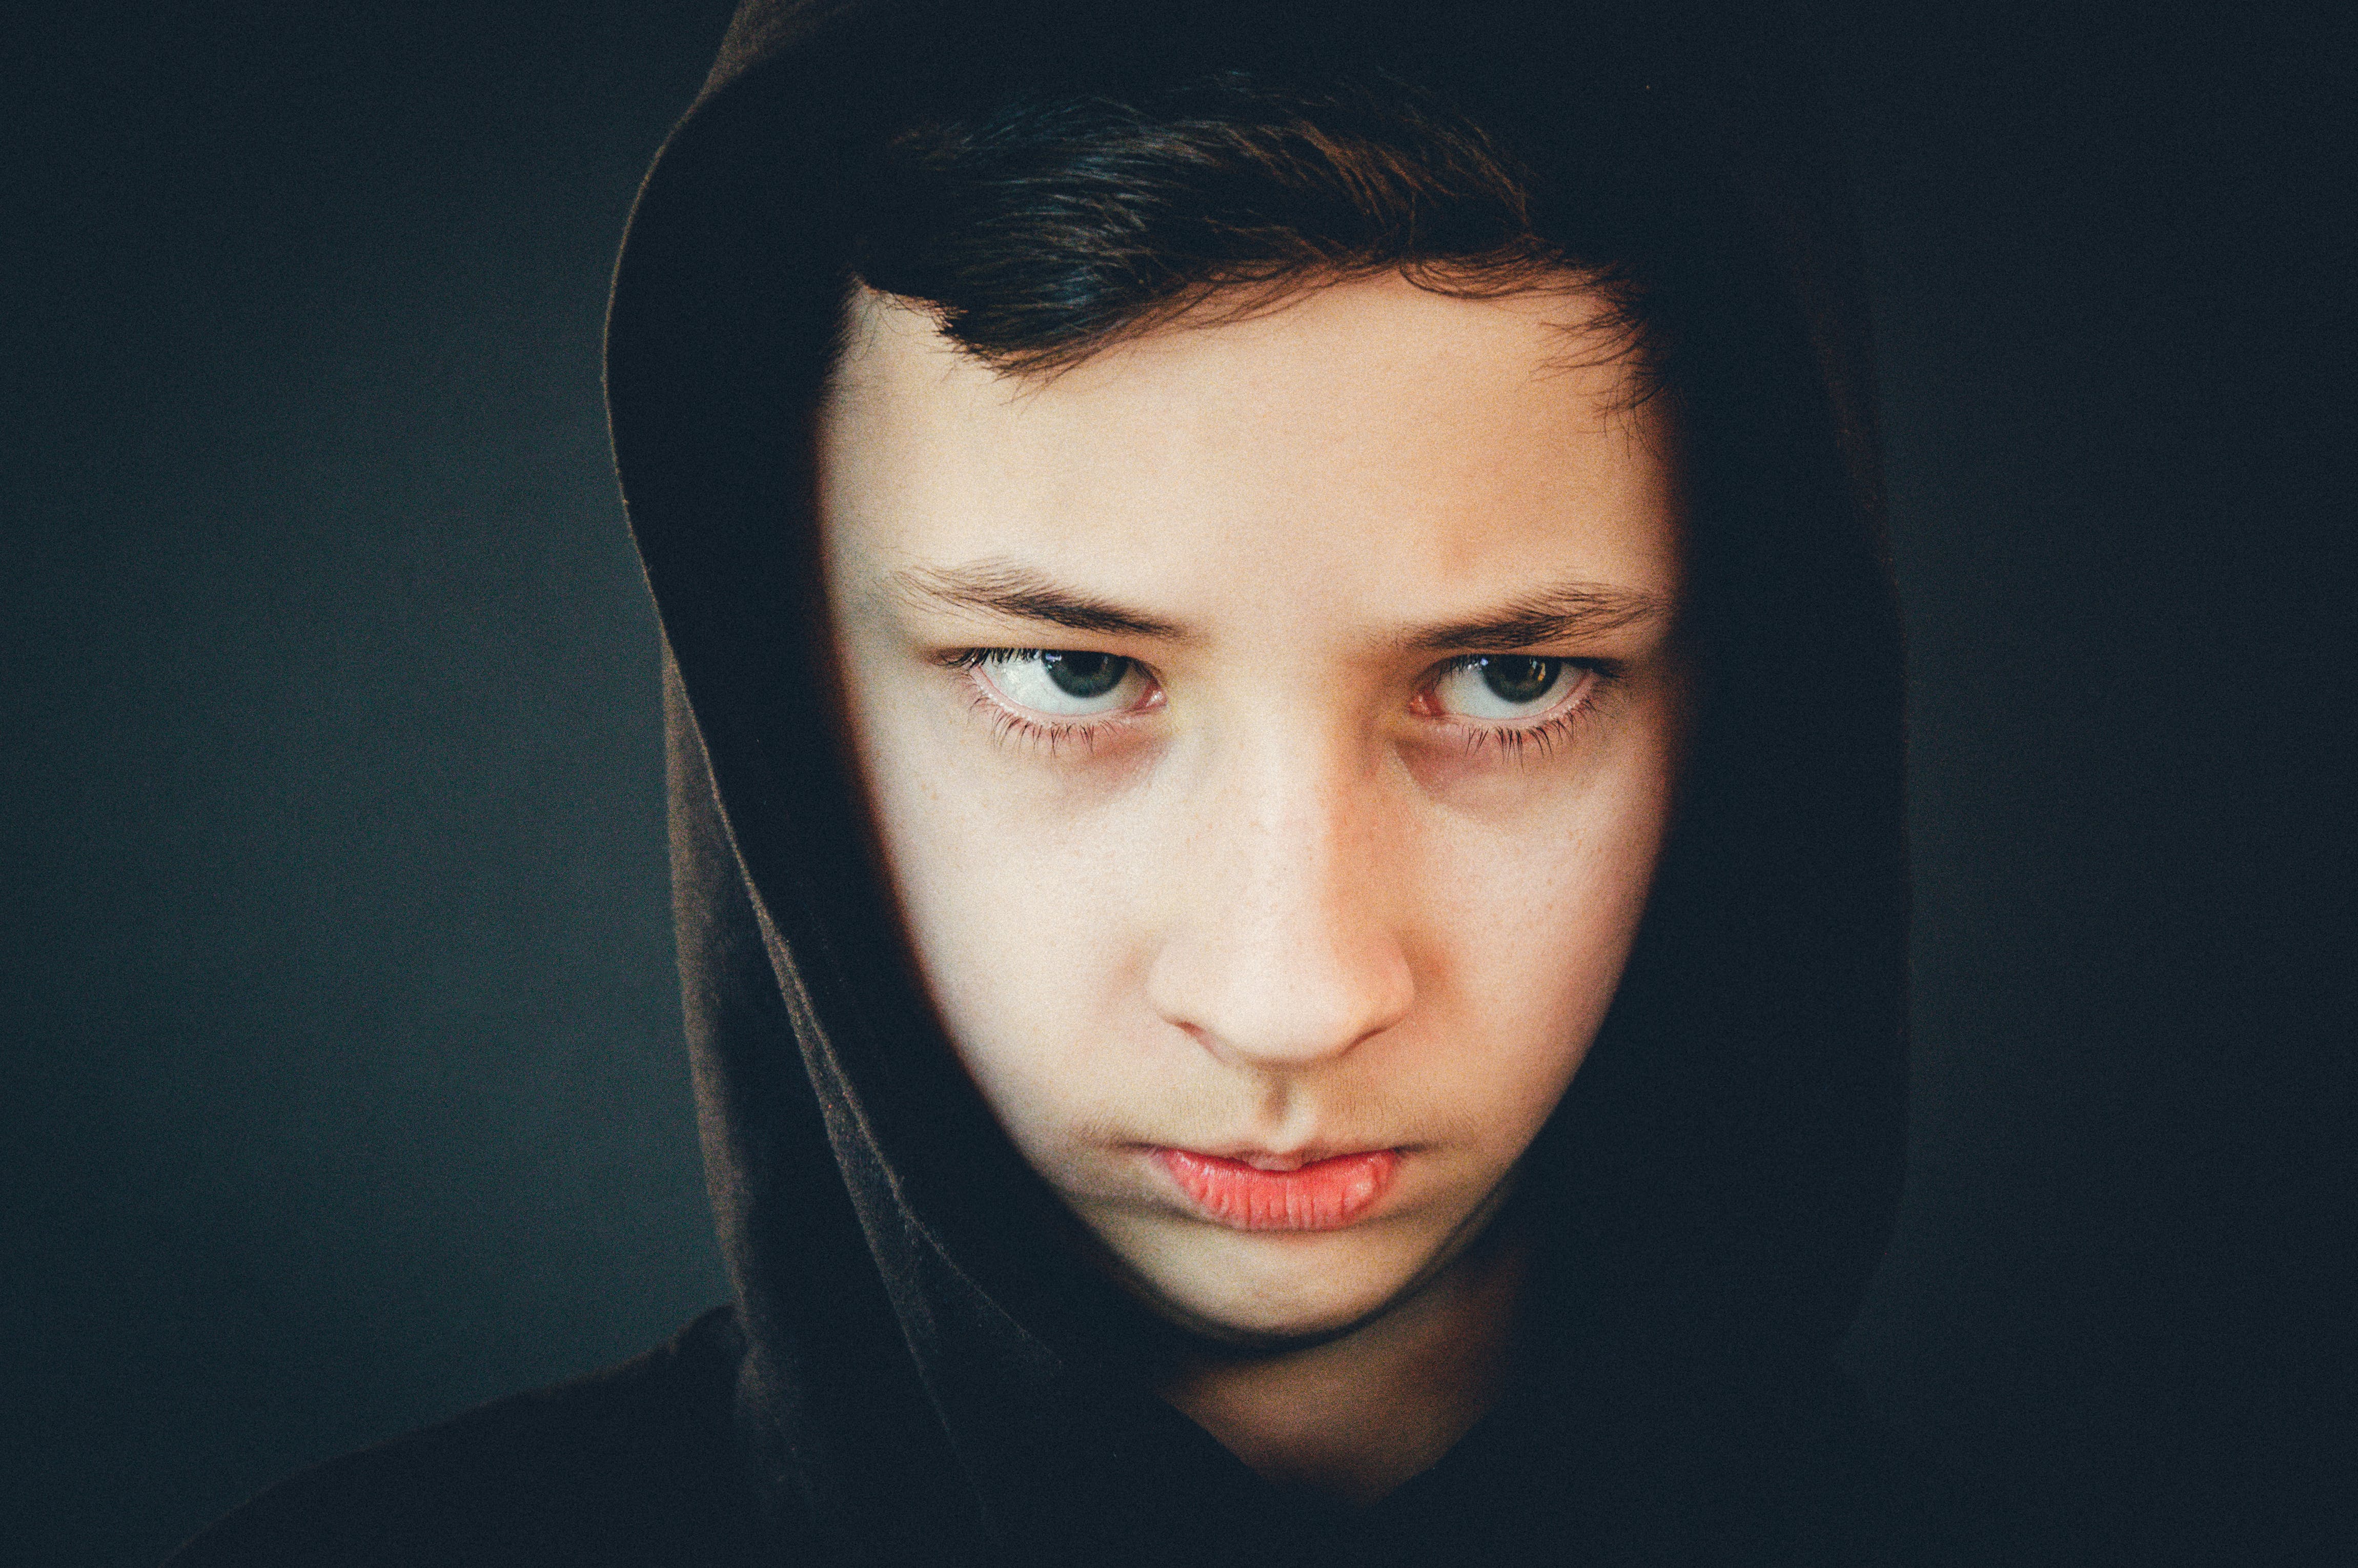 Un garçon contrarié qui porte un sweat à capuche et qui a l'air sombre | Source : Pexels